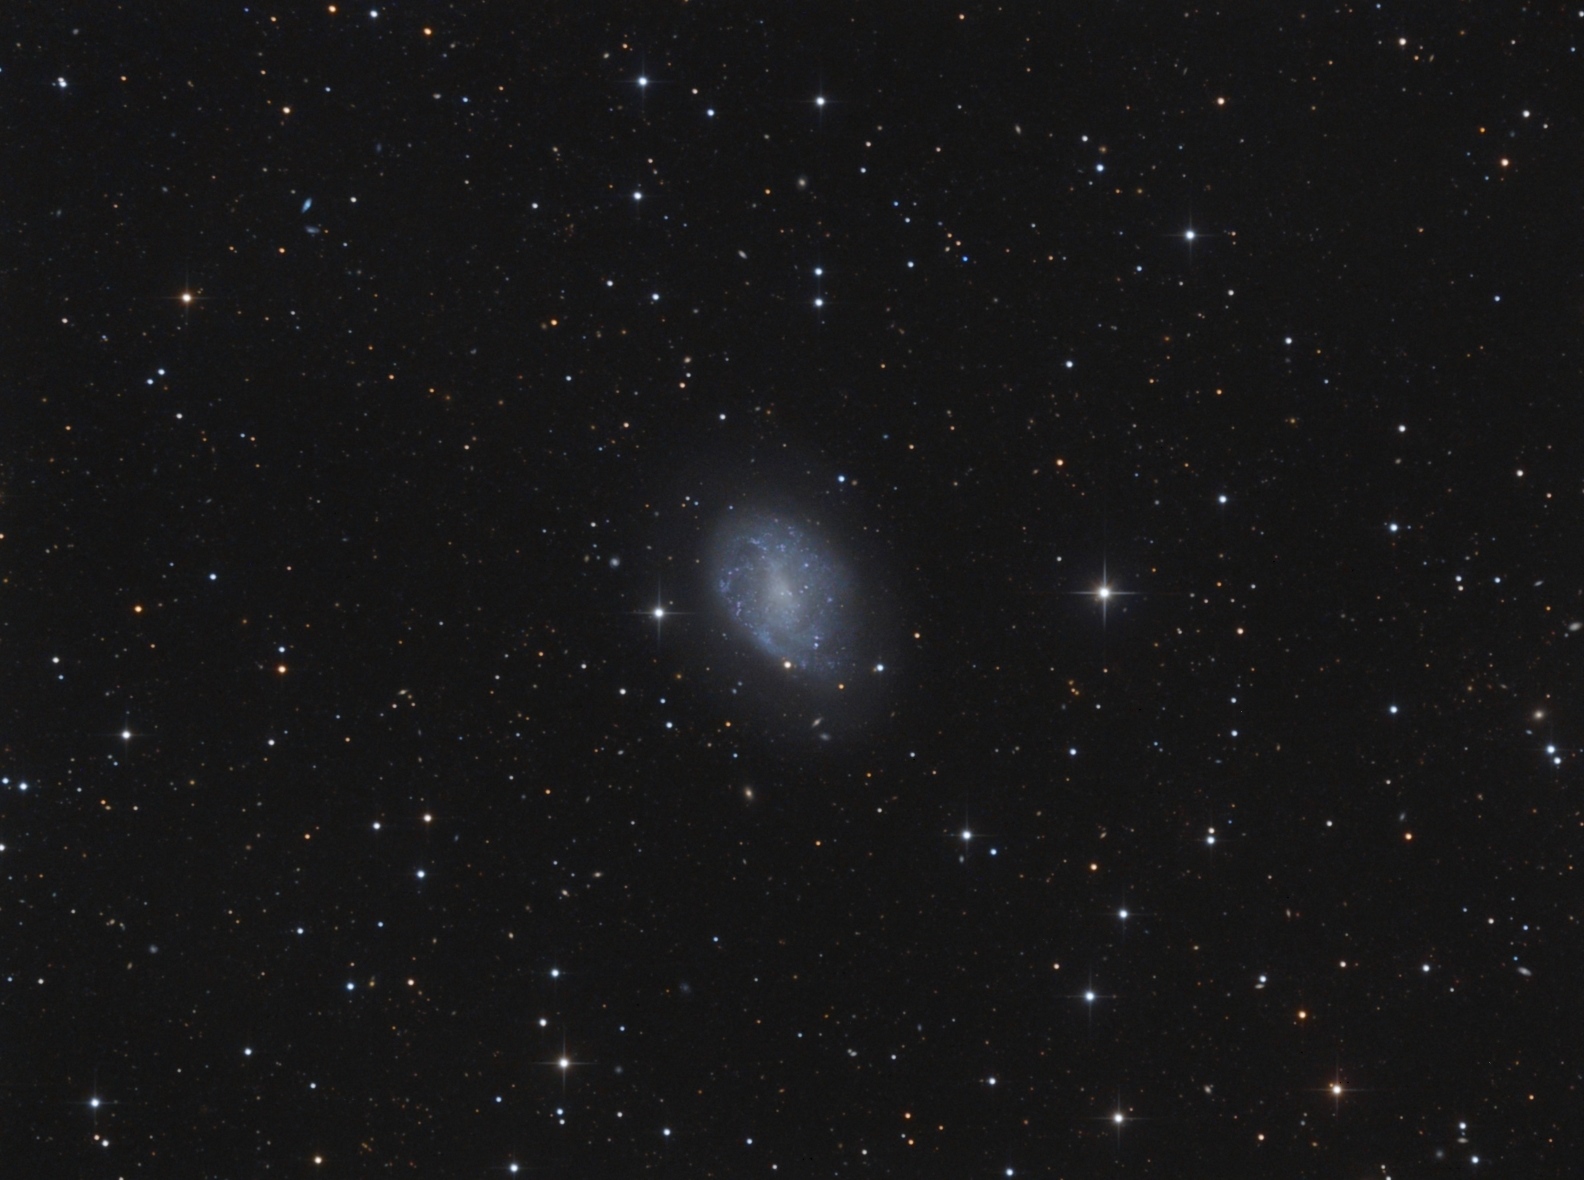 NGC 4242